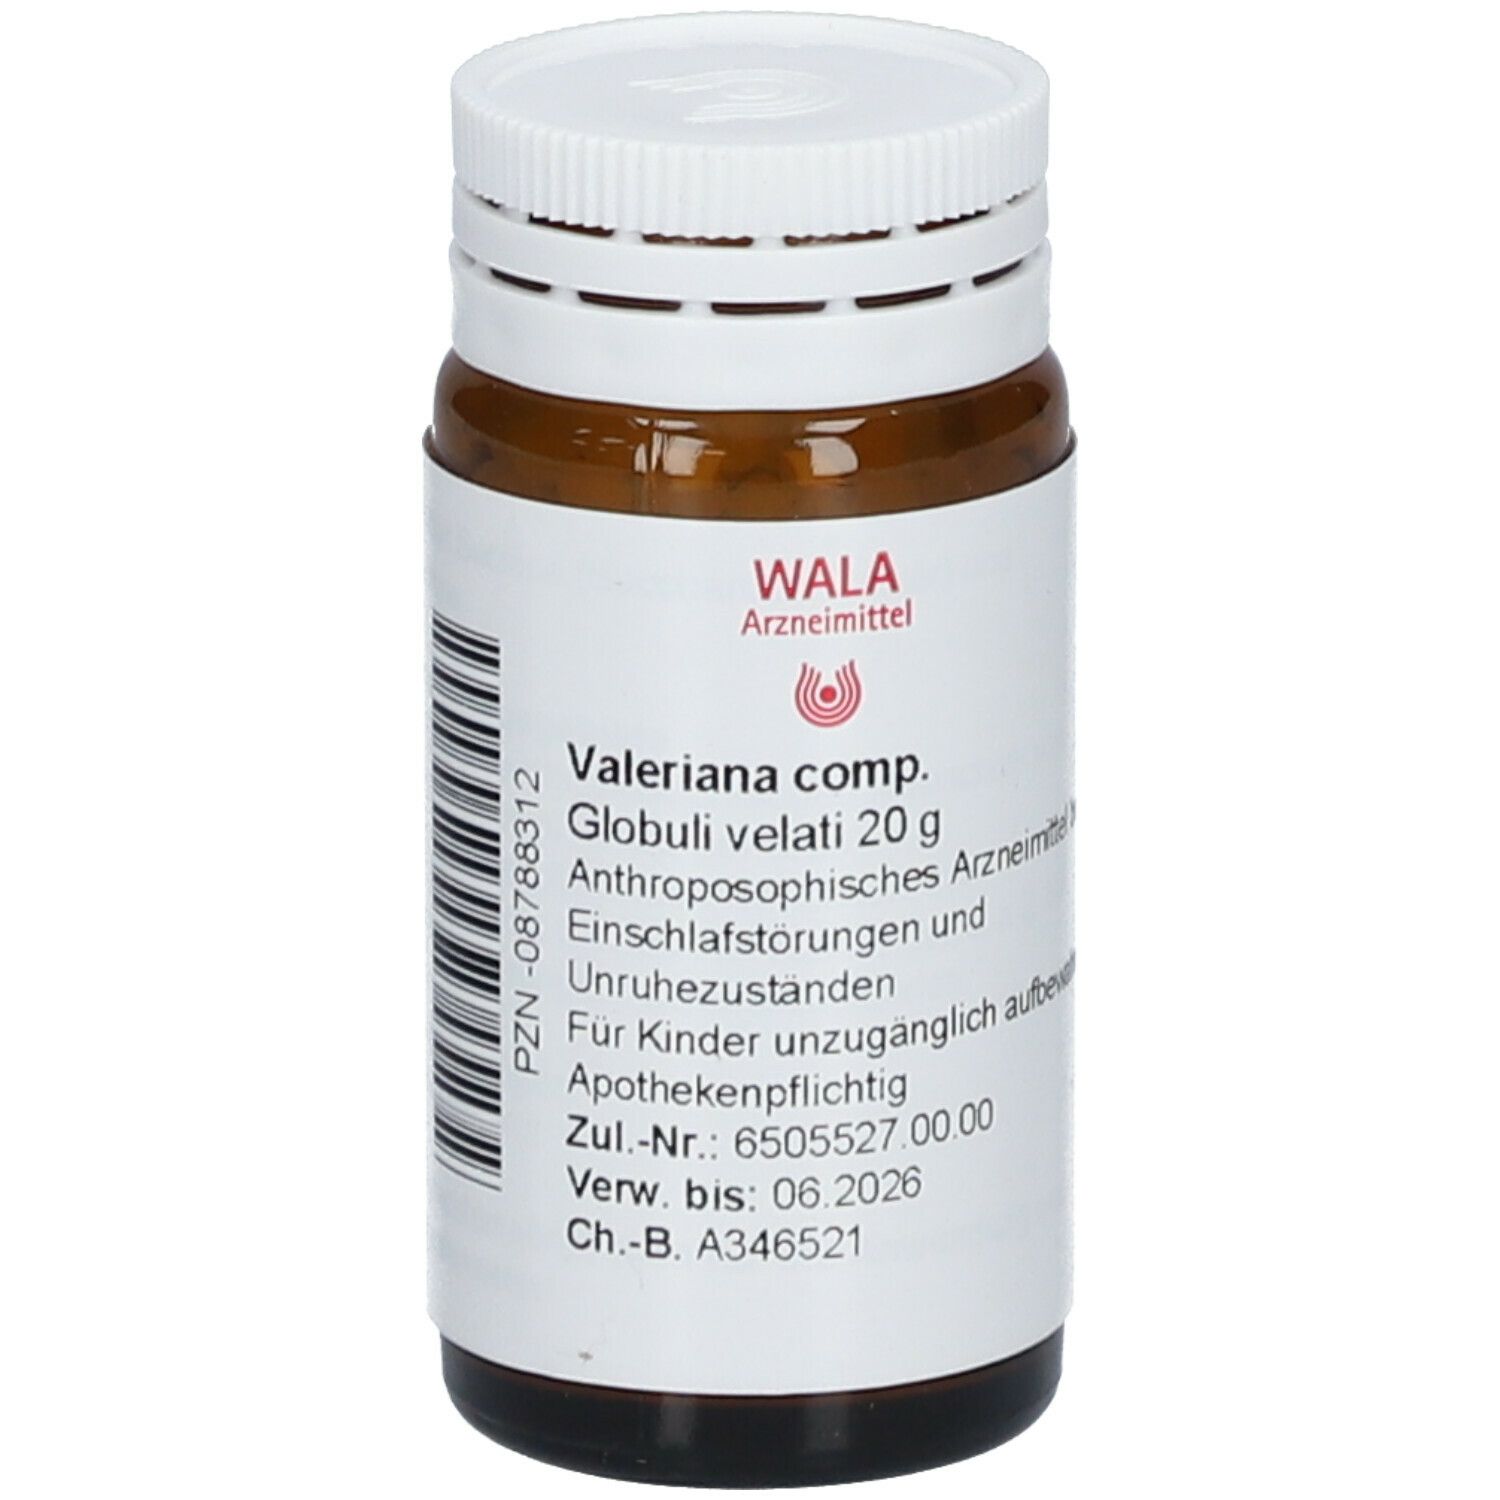 WALA® Valeriana Comp. Globuli